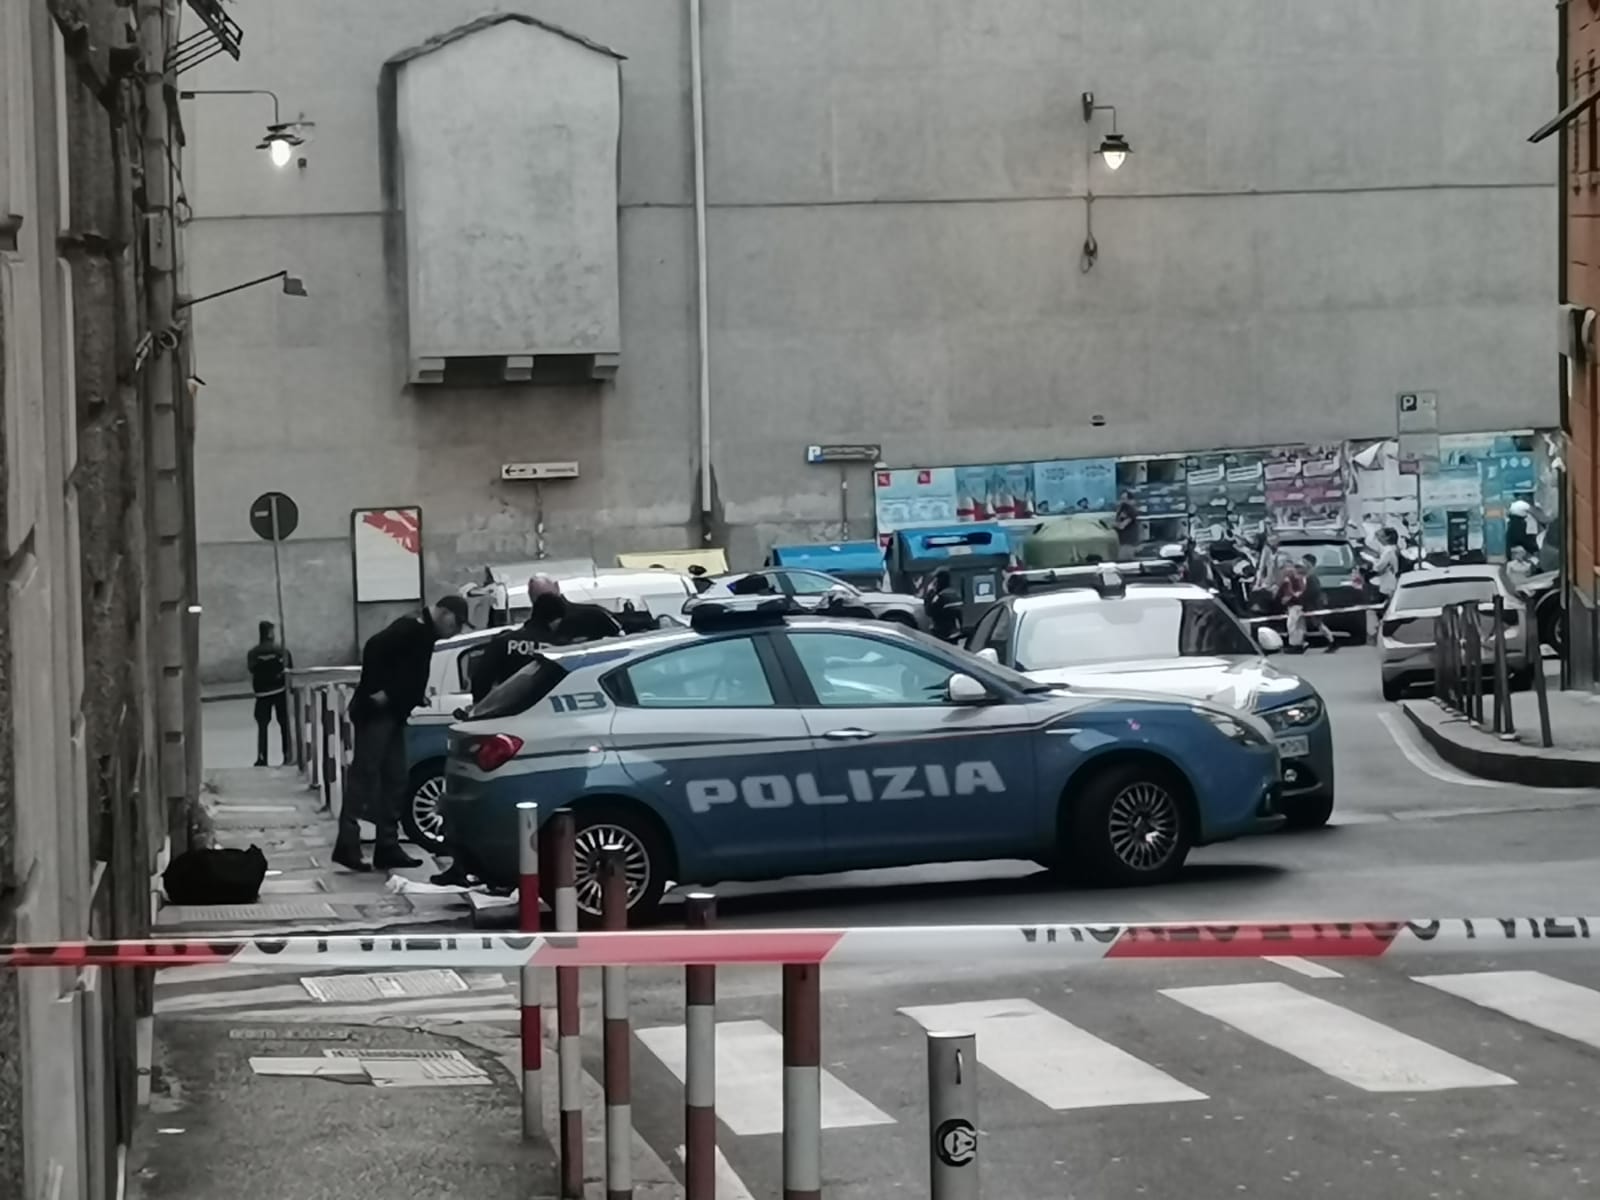 Genova, omicidio via polleri: domani interrogatorio di convalida arresto a Giribaldi. Il testimone conferma versione del portuale